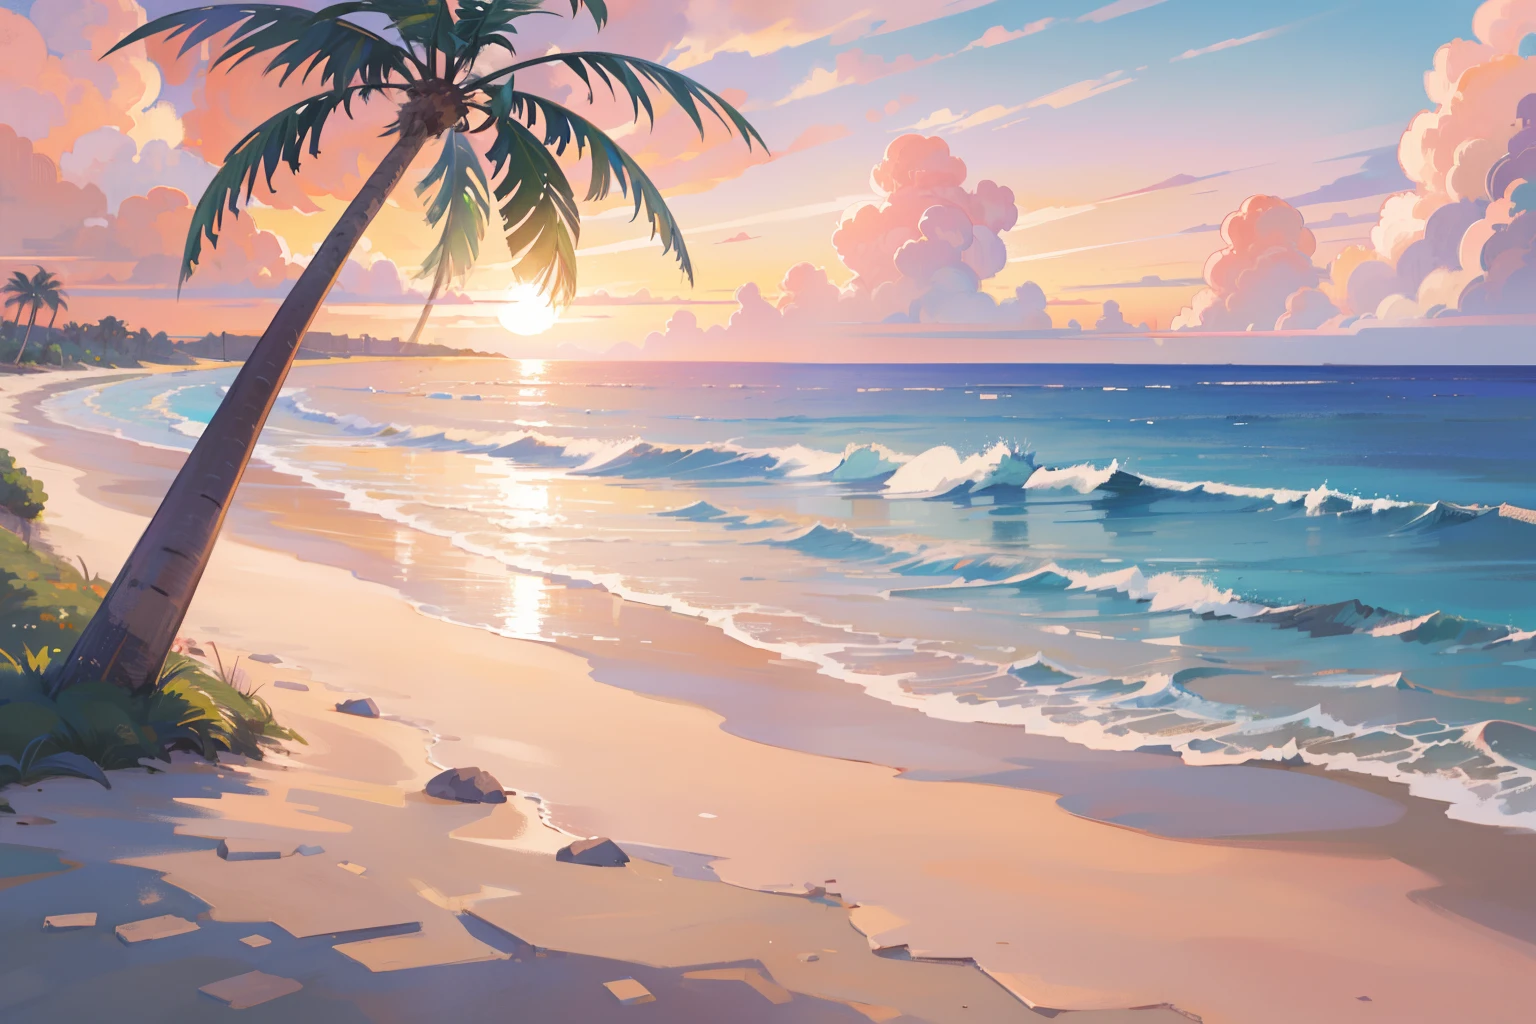 (Obra maestra), mejor calidad, resolución ultra alta, hermoso paisaje, paisaje detallado, (color pastel cálido), playa, colorful playa, Arena rosa, palmera, Mar, atardecer